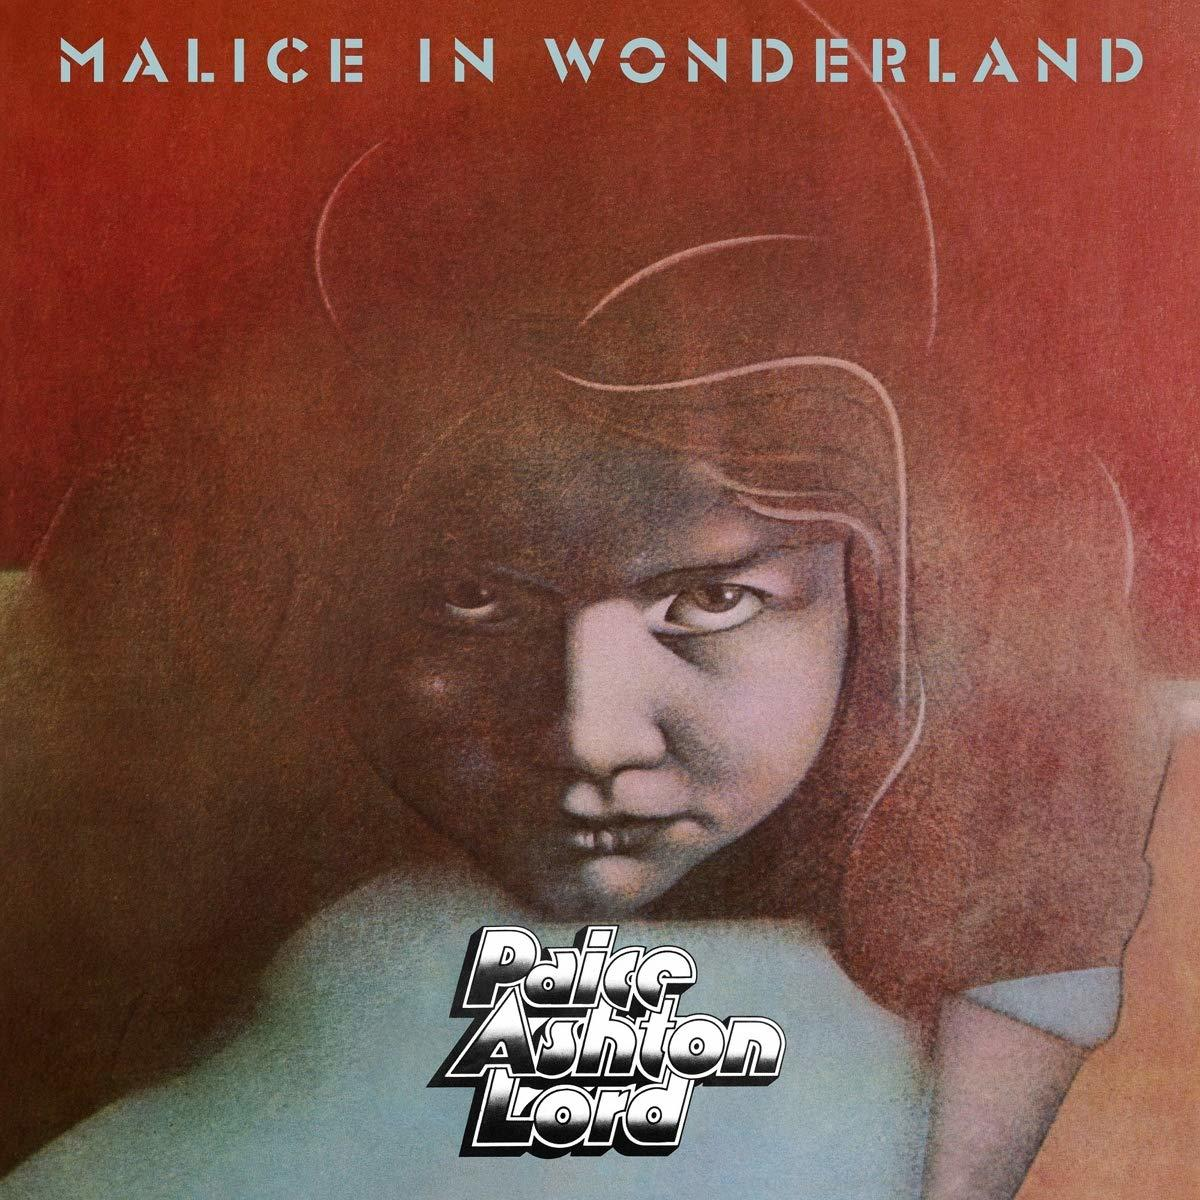 Paice Ashton Lord - In (2019 Reissue) Wonderland (Vinyl) - Malice